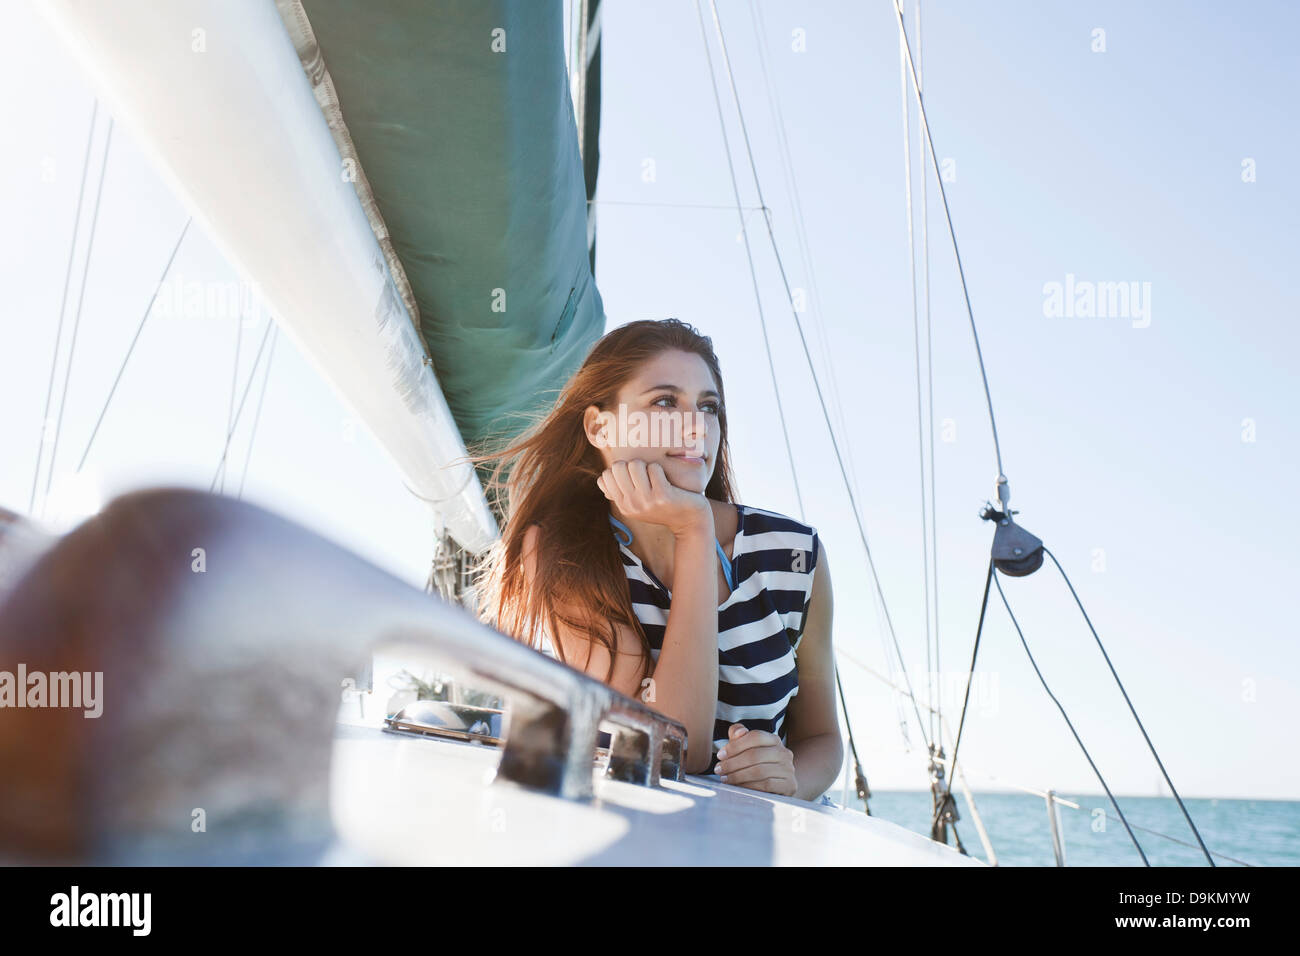 Junge Frau auf Yacht trägt gestreiftes top Stockfoto